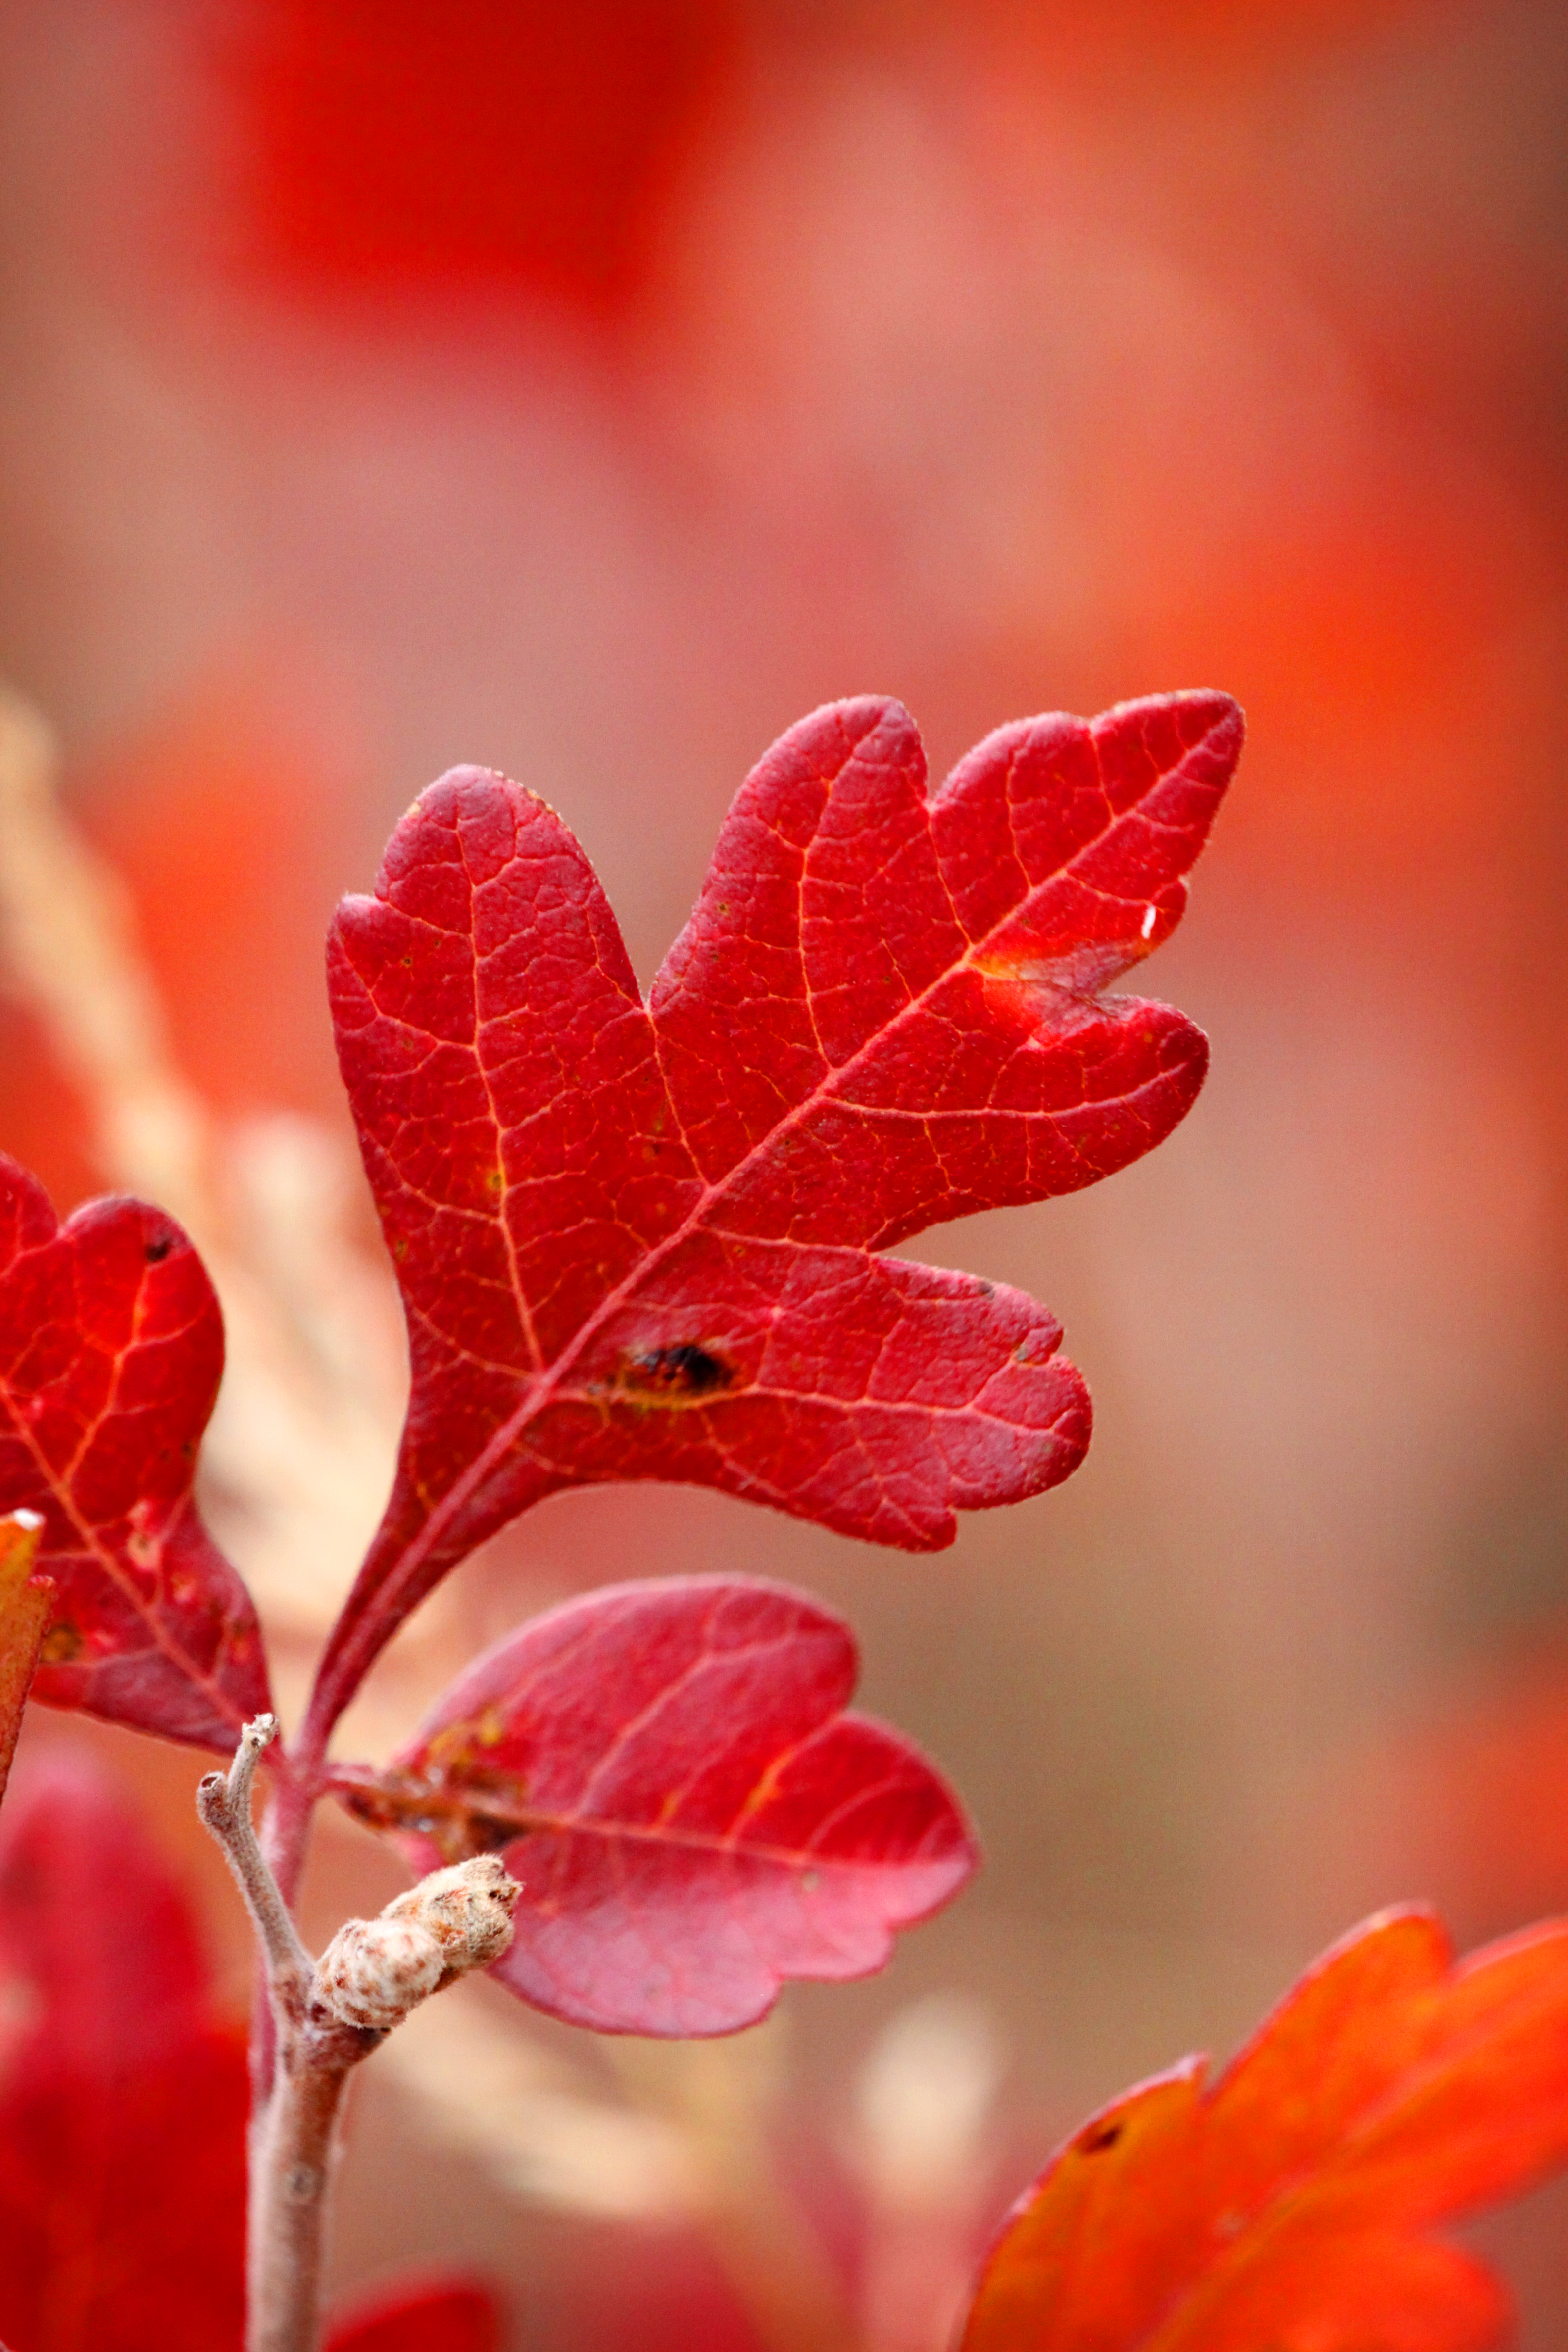 A Red Leaf